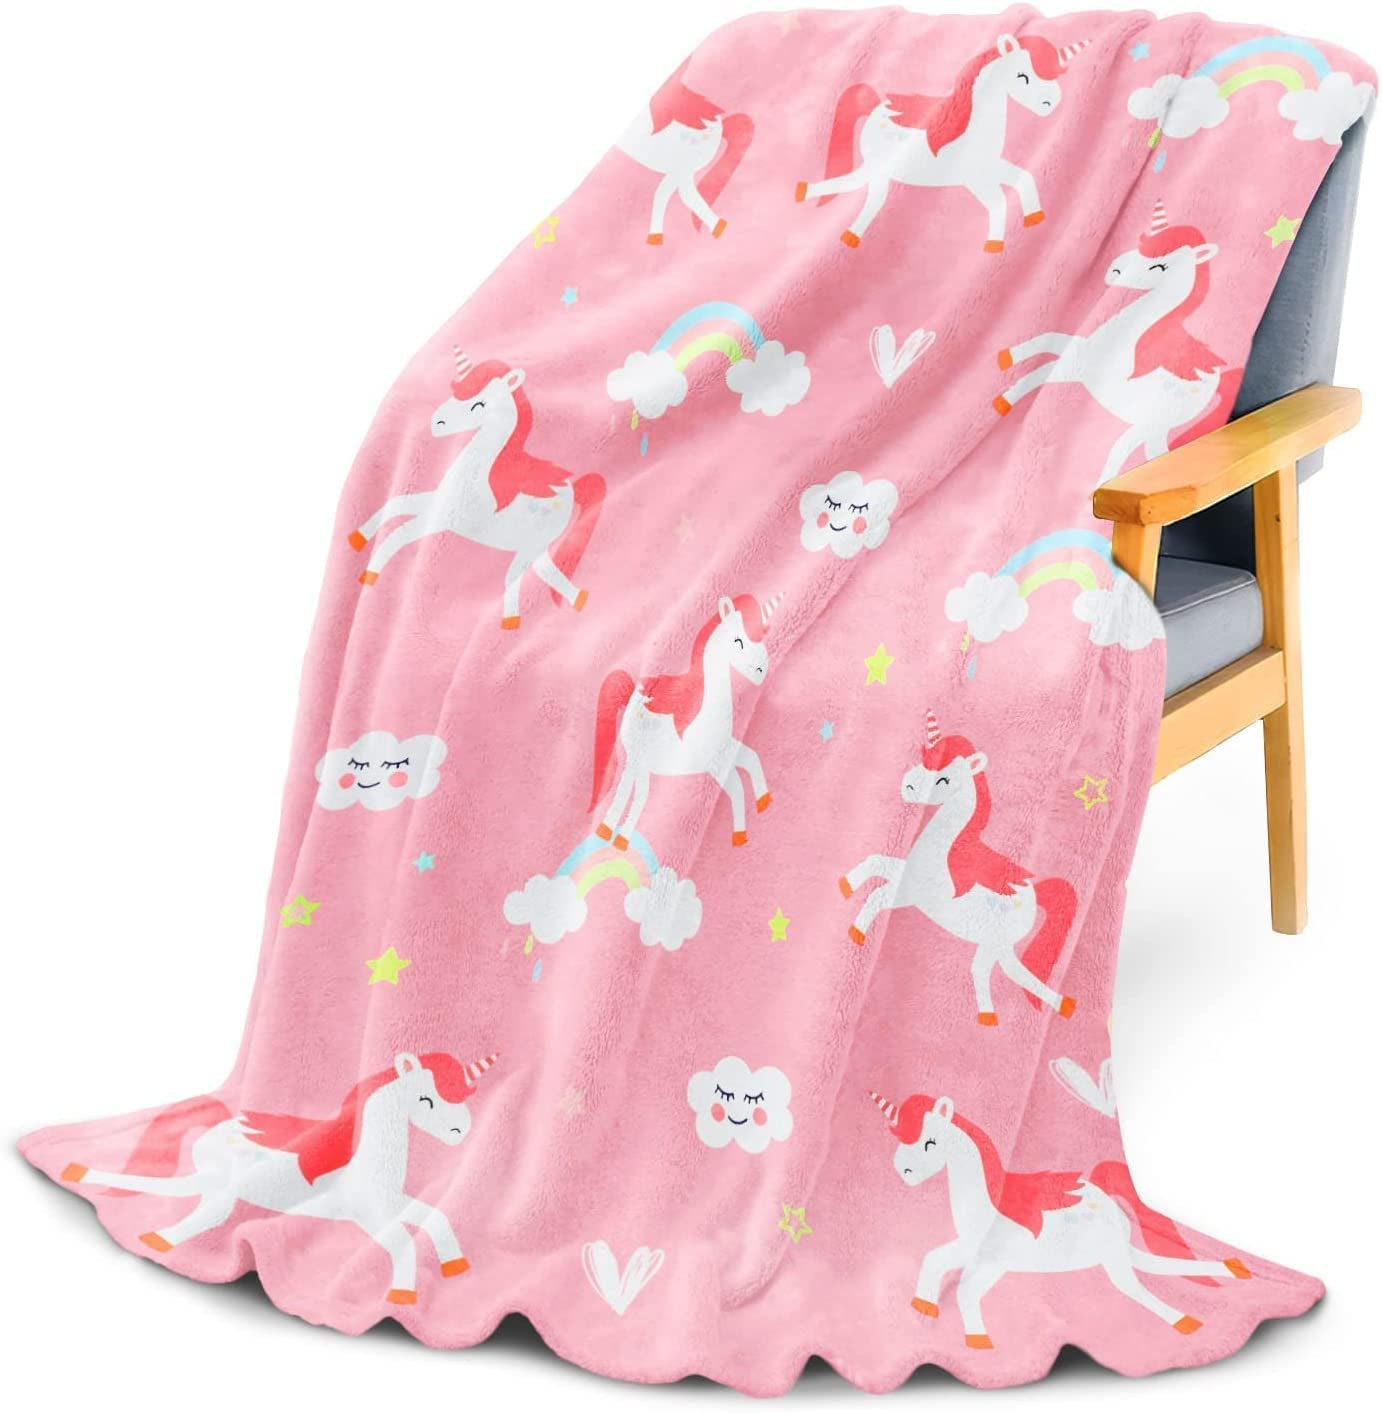 Unicorn Blanket for Girls Cute Kids Fleece Unicorn Throw Blanket Unicorns Gifts for Kids Birthday Christmas, Unicorn Decor for Girls Room 40X50 Inch